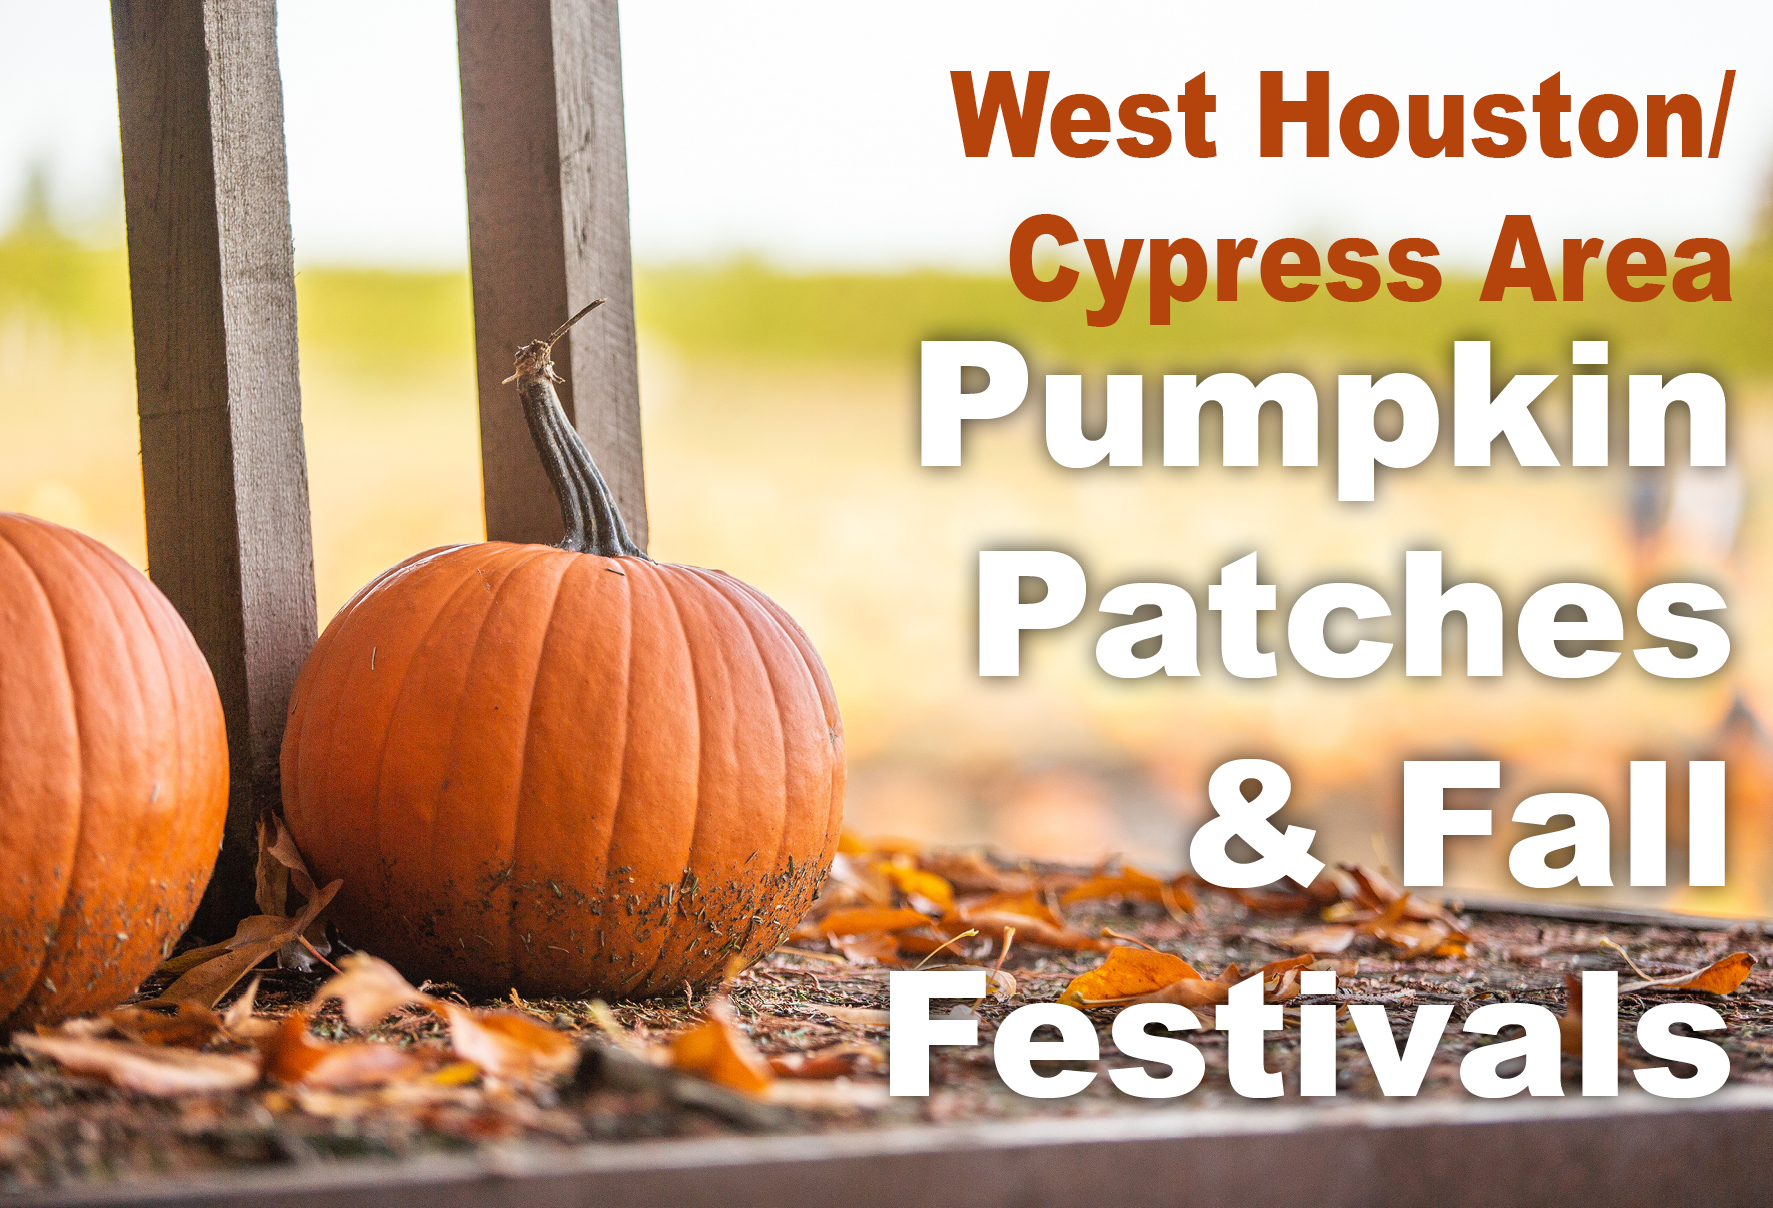 Pumpkin Patches & Fall Festivals